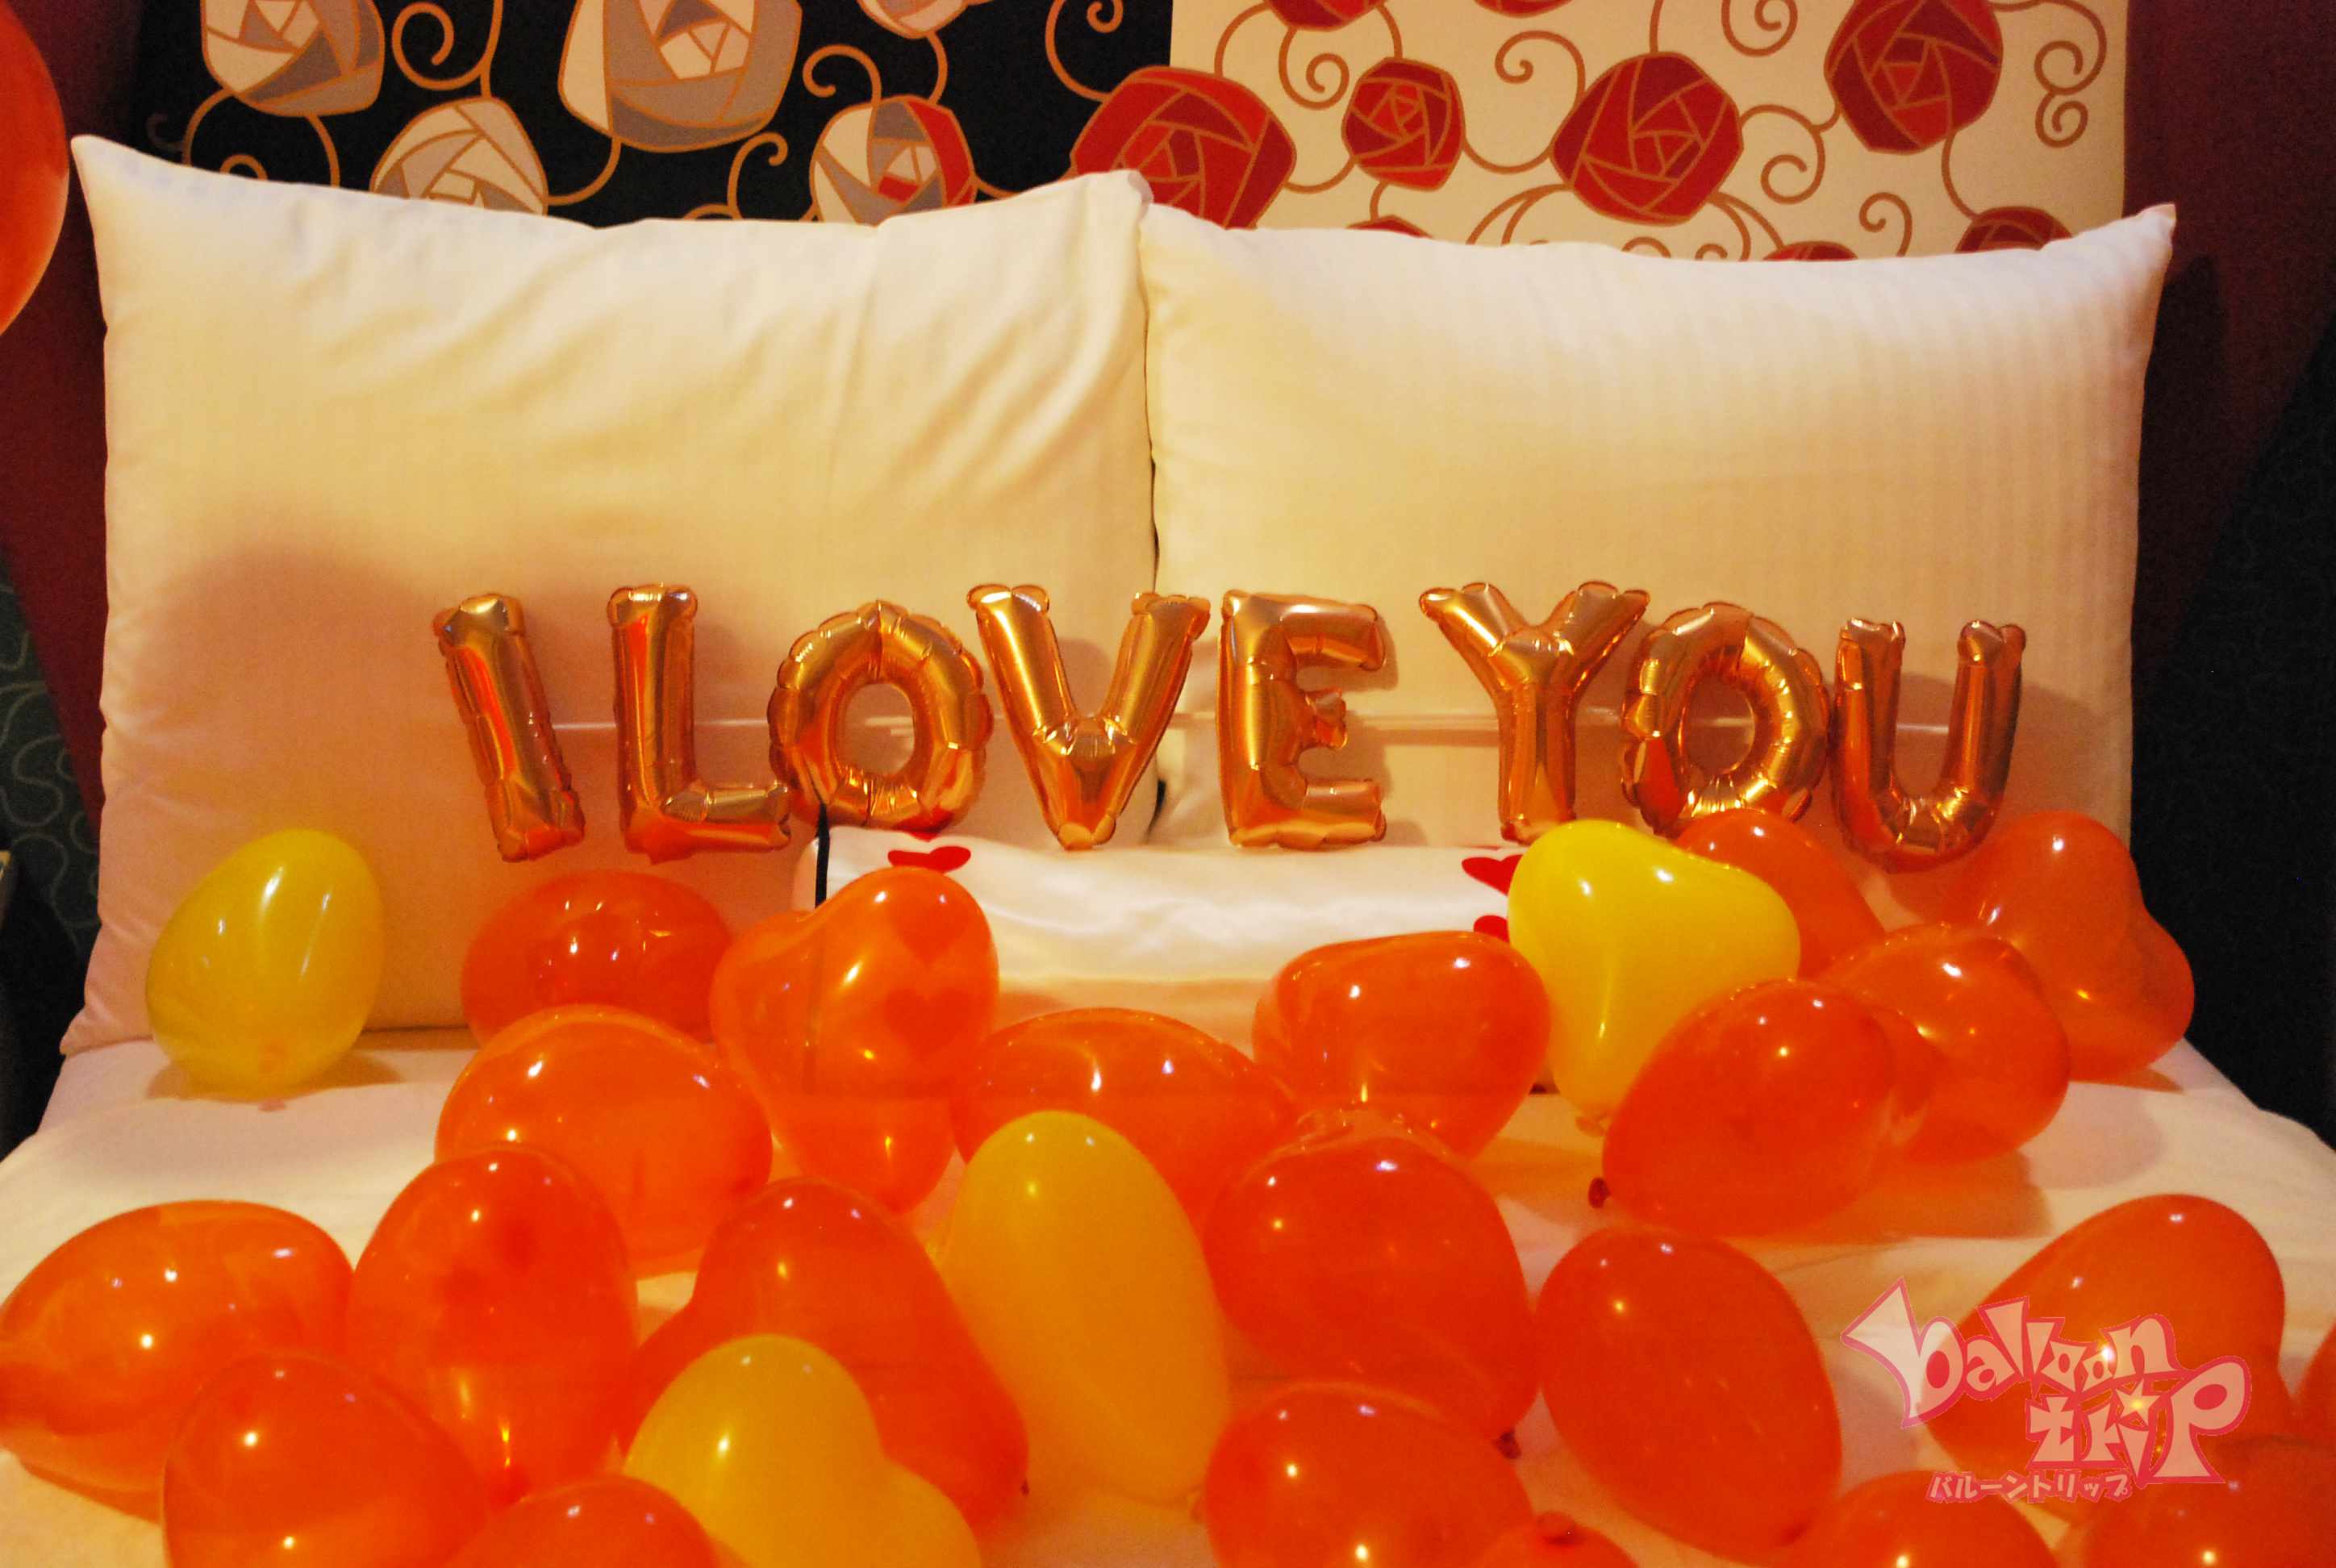 ディズニーランドホテルで最高の演出を バルーン出張 デザイン 演出 バルーントリップ Balloontrip